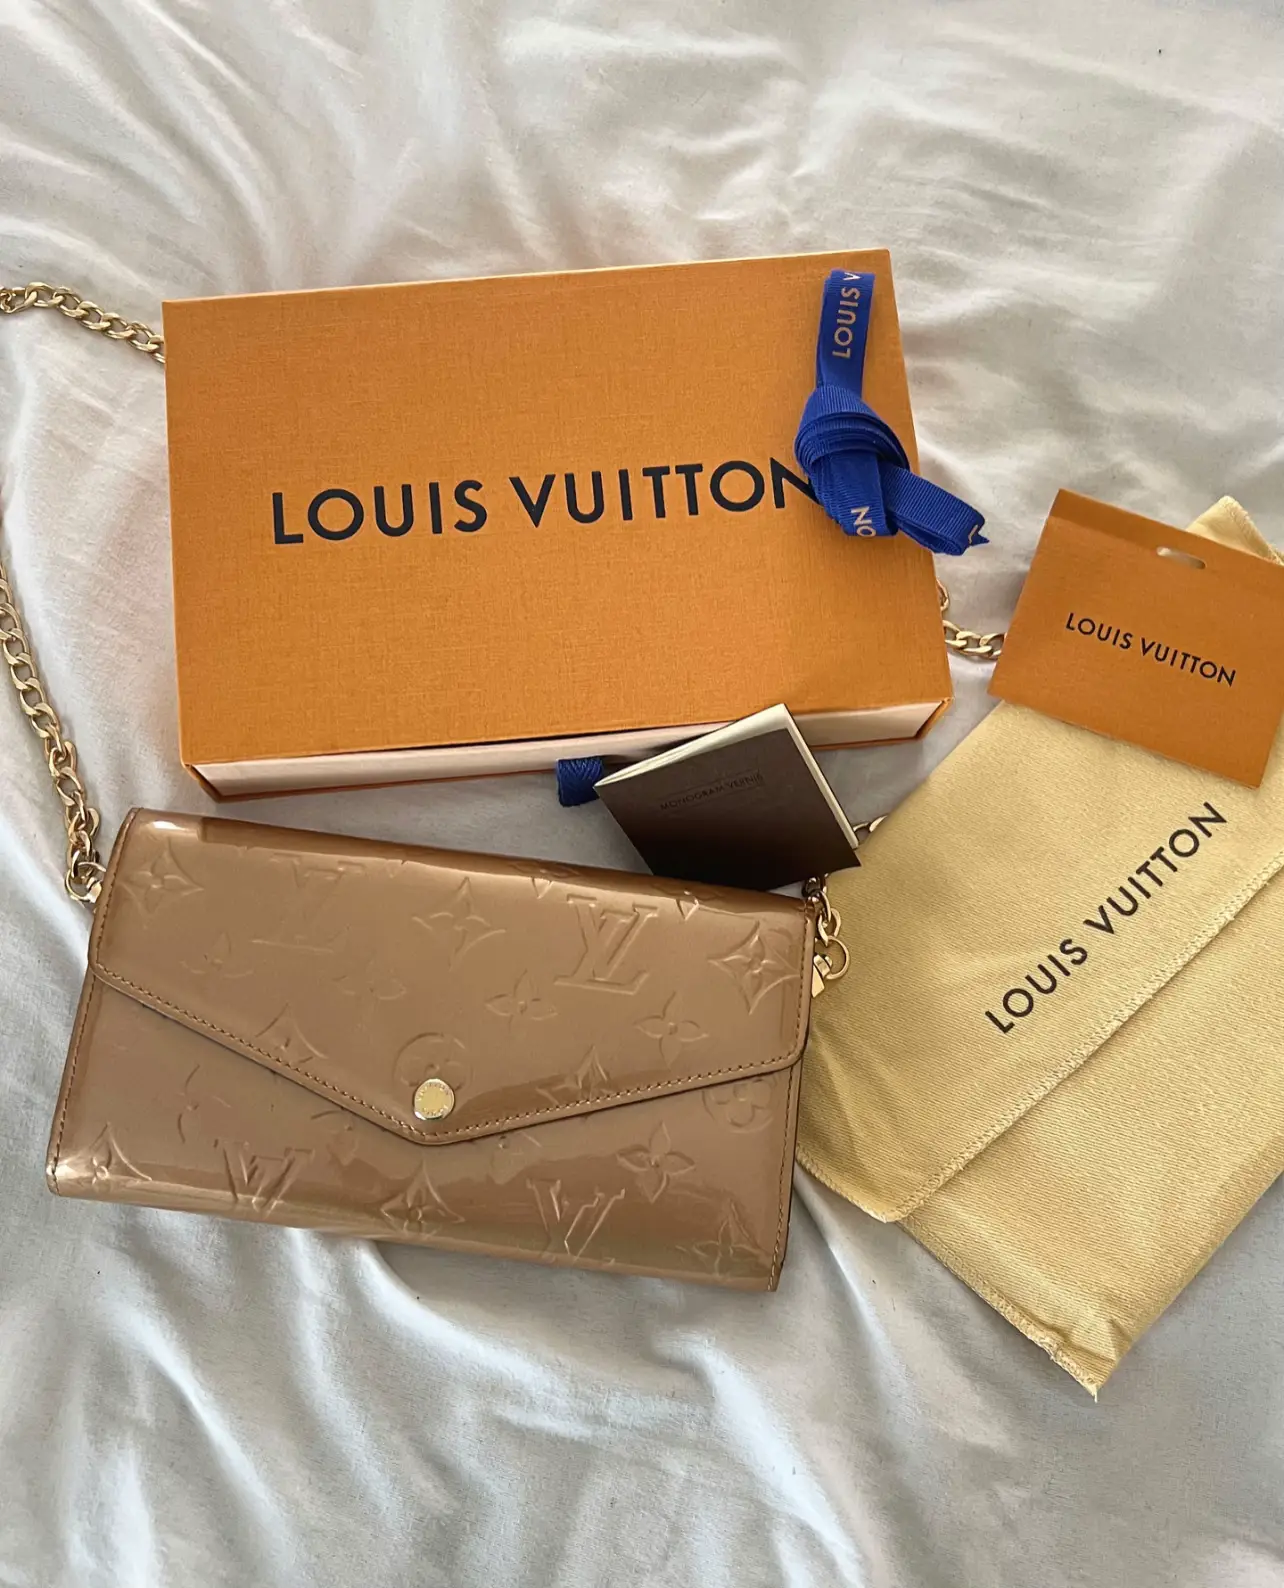 Louis Vuitton Vernis Leather Review (vs monogram canvas) 